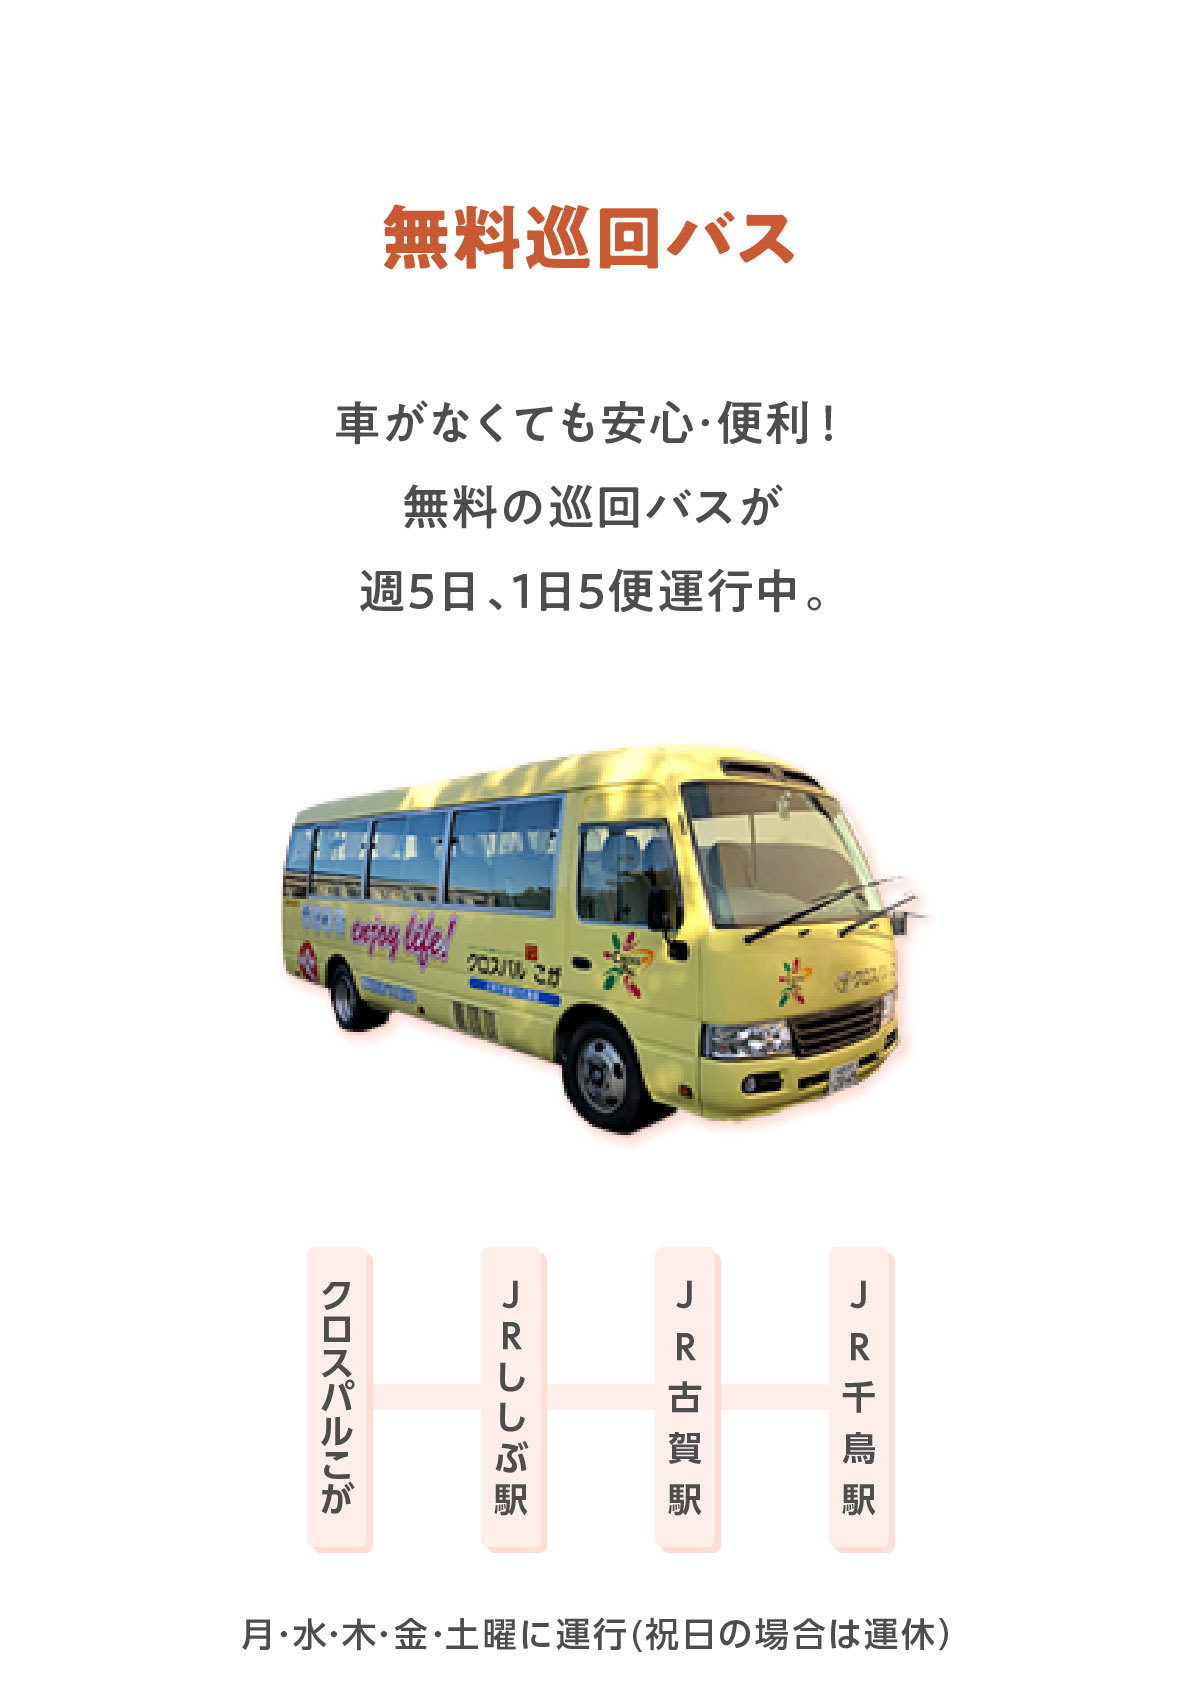 無料巡回バス 車がなくても安心･便利！無料の巡回バスが週5日、1日5便運行中。